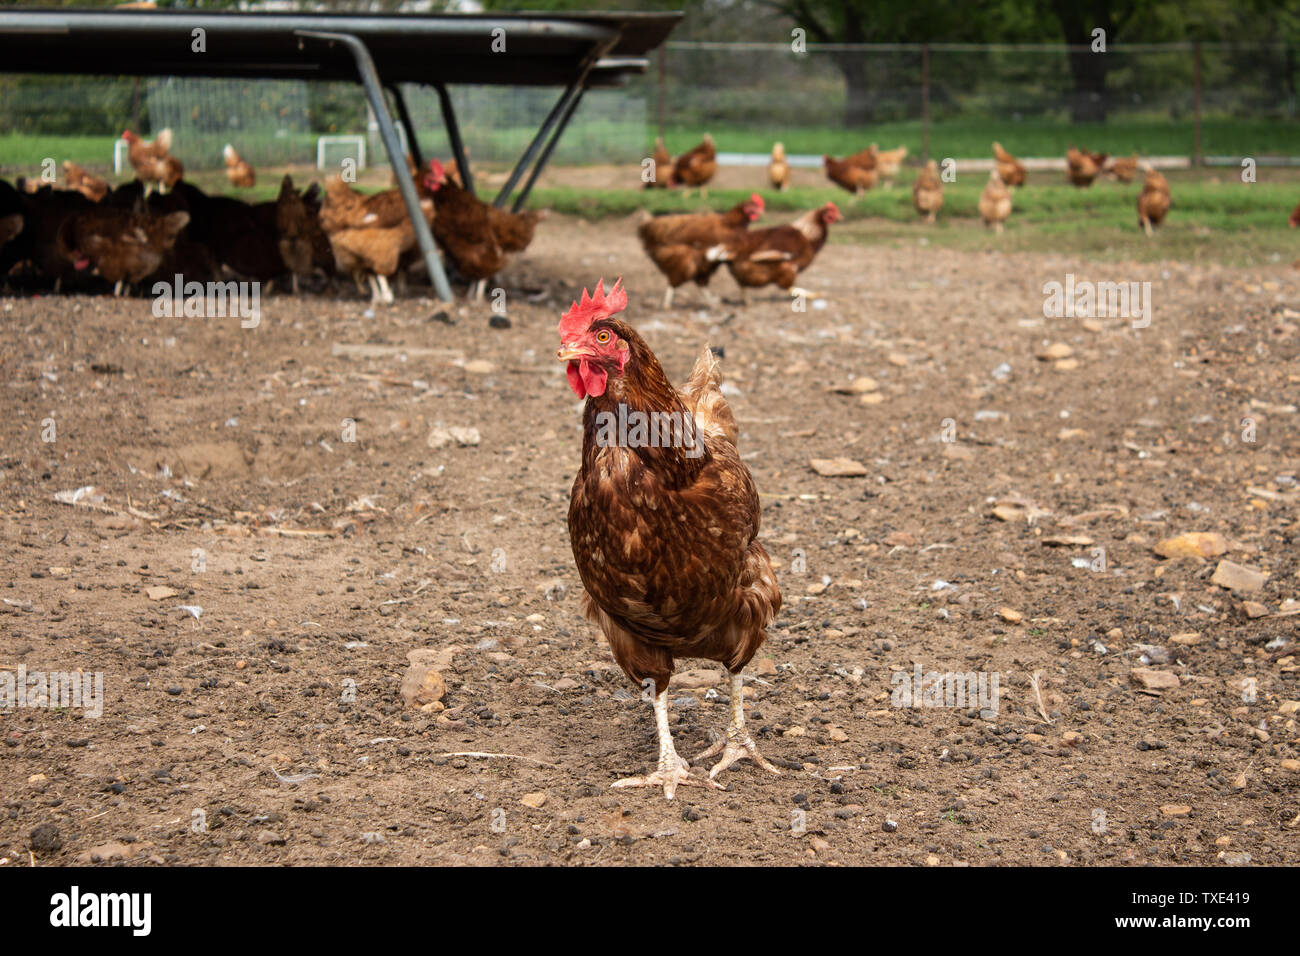 Free Range chicken farm Isa Brown montrant hen gratter dans la terre avec un grand nombre de poulets en arrière-plan Banque D'Images